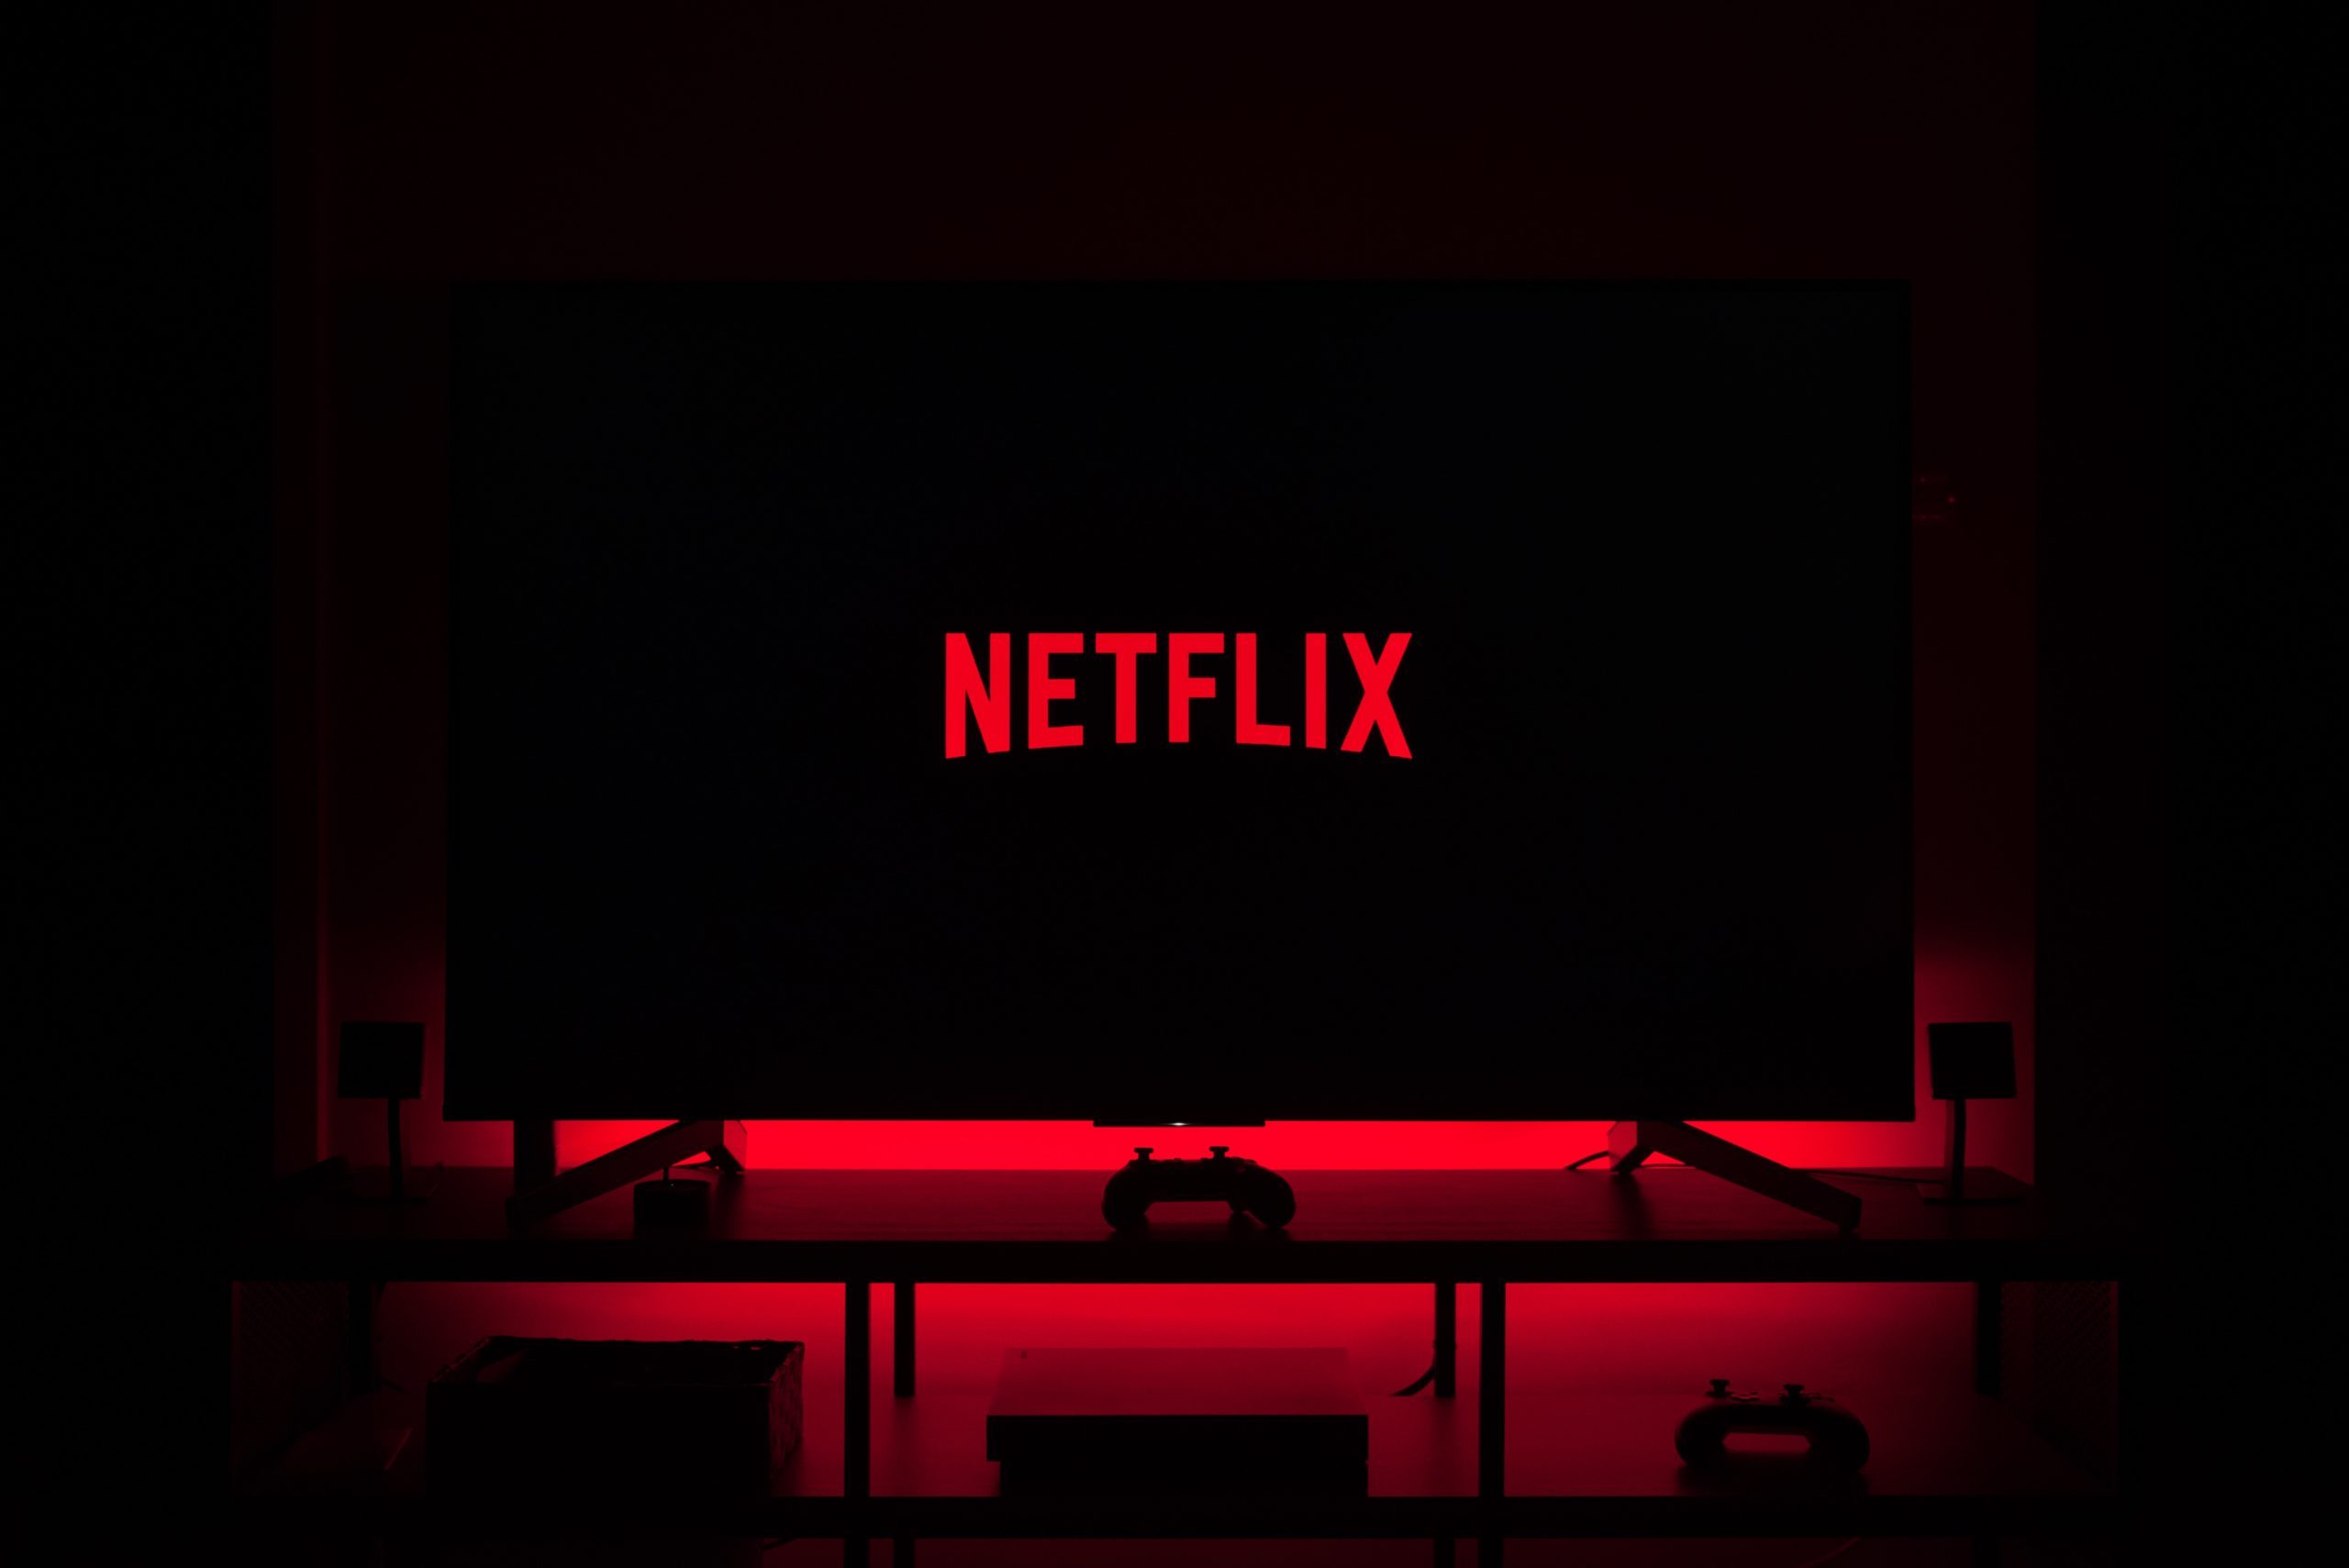 Fim de senhas compartilhadas fez busca para cancelar a Netflix disparar no  Brasil - MacMagazine